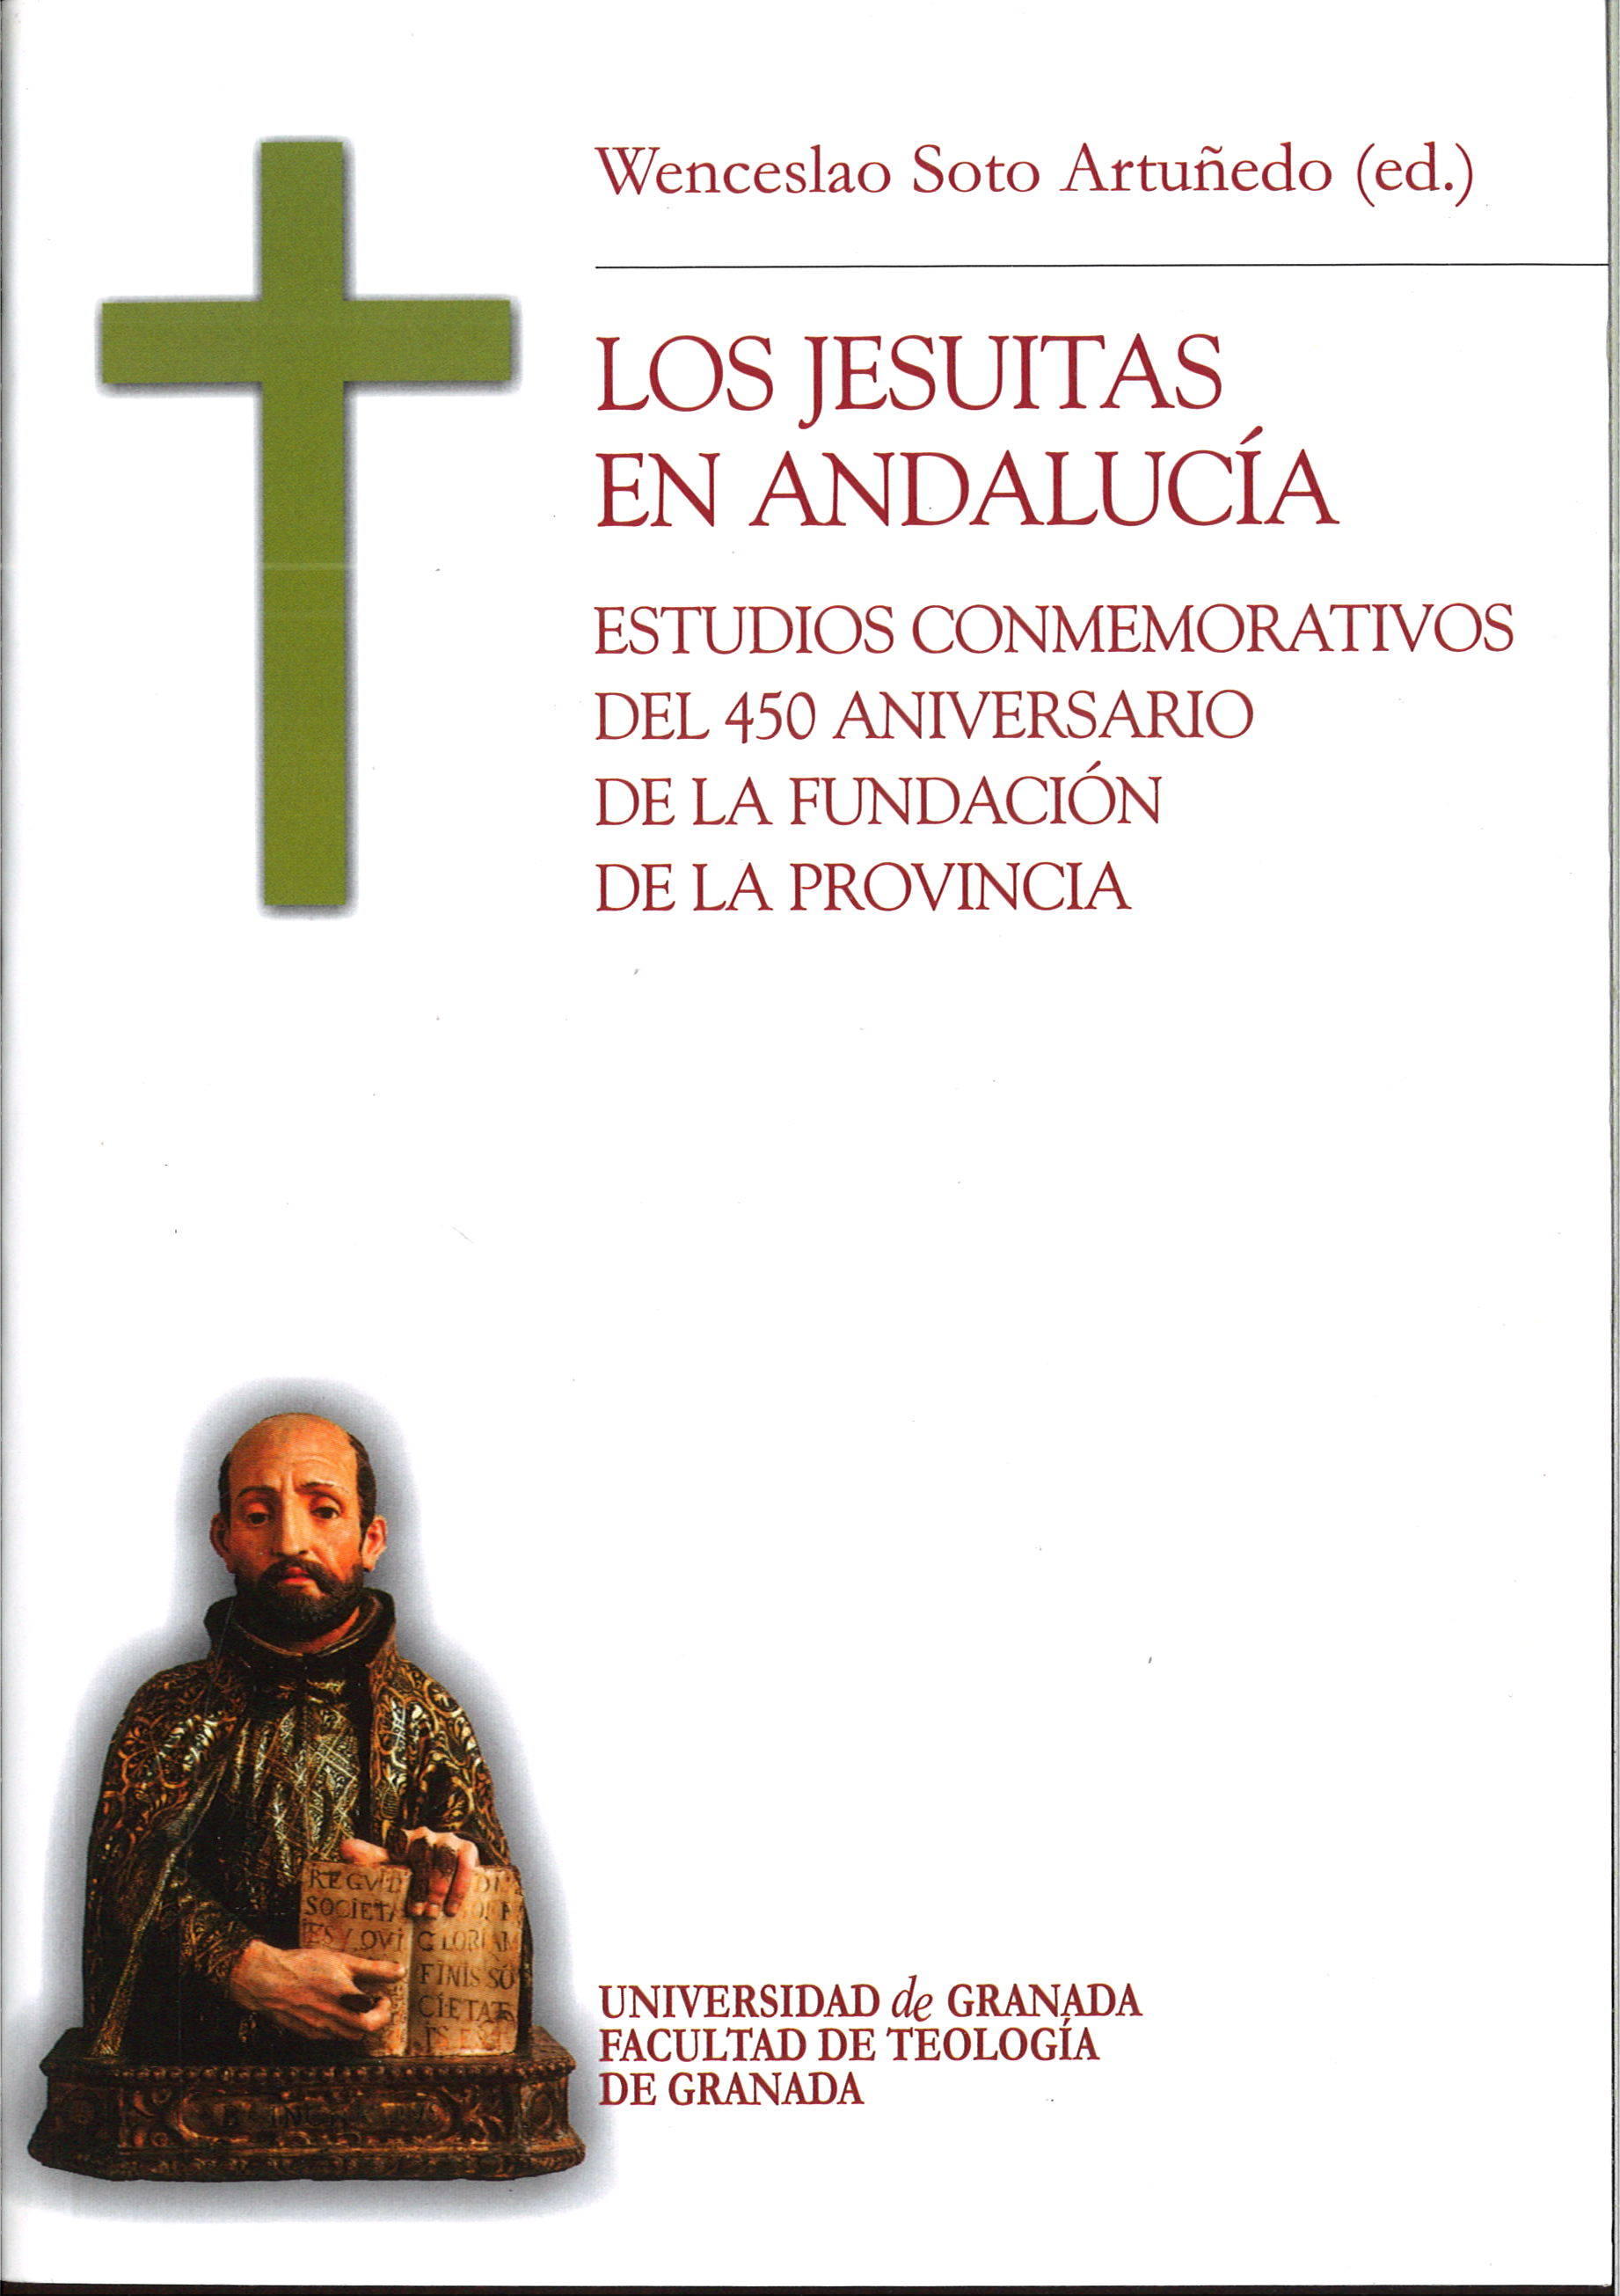 Imagen de portada del libro Los Jesuitas en Andalucía